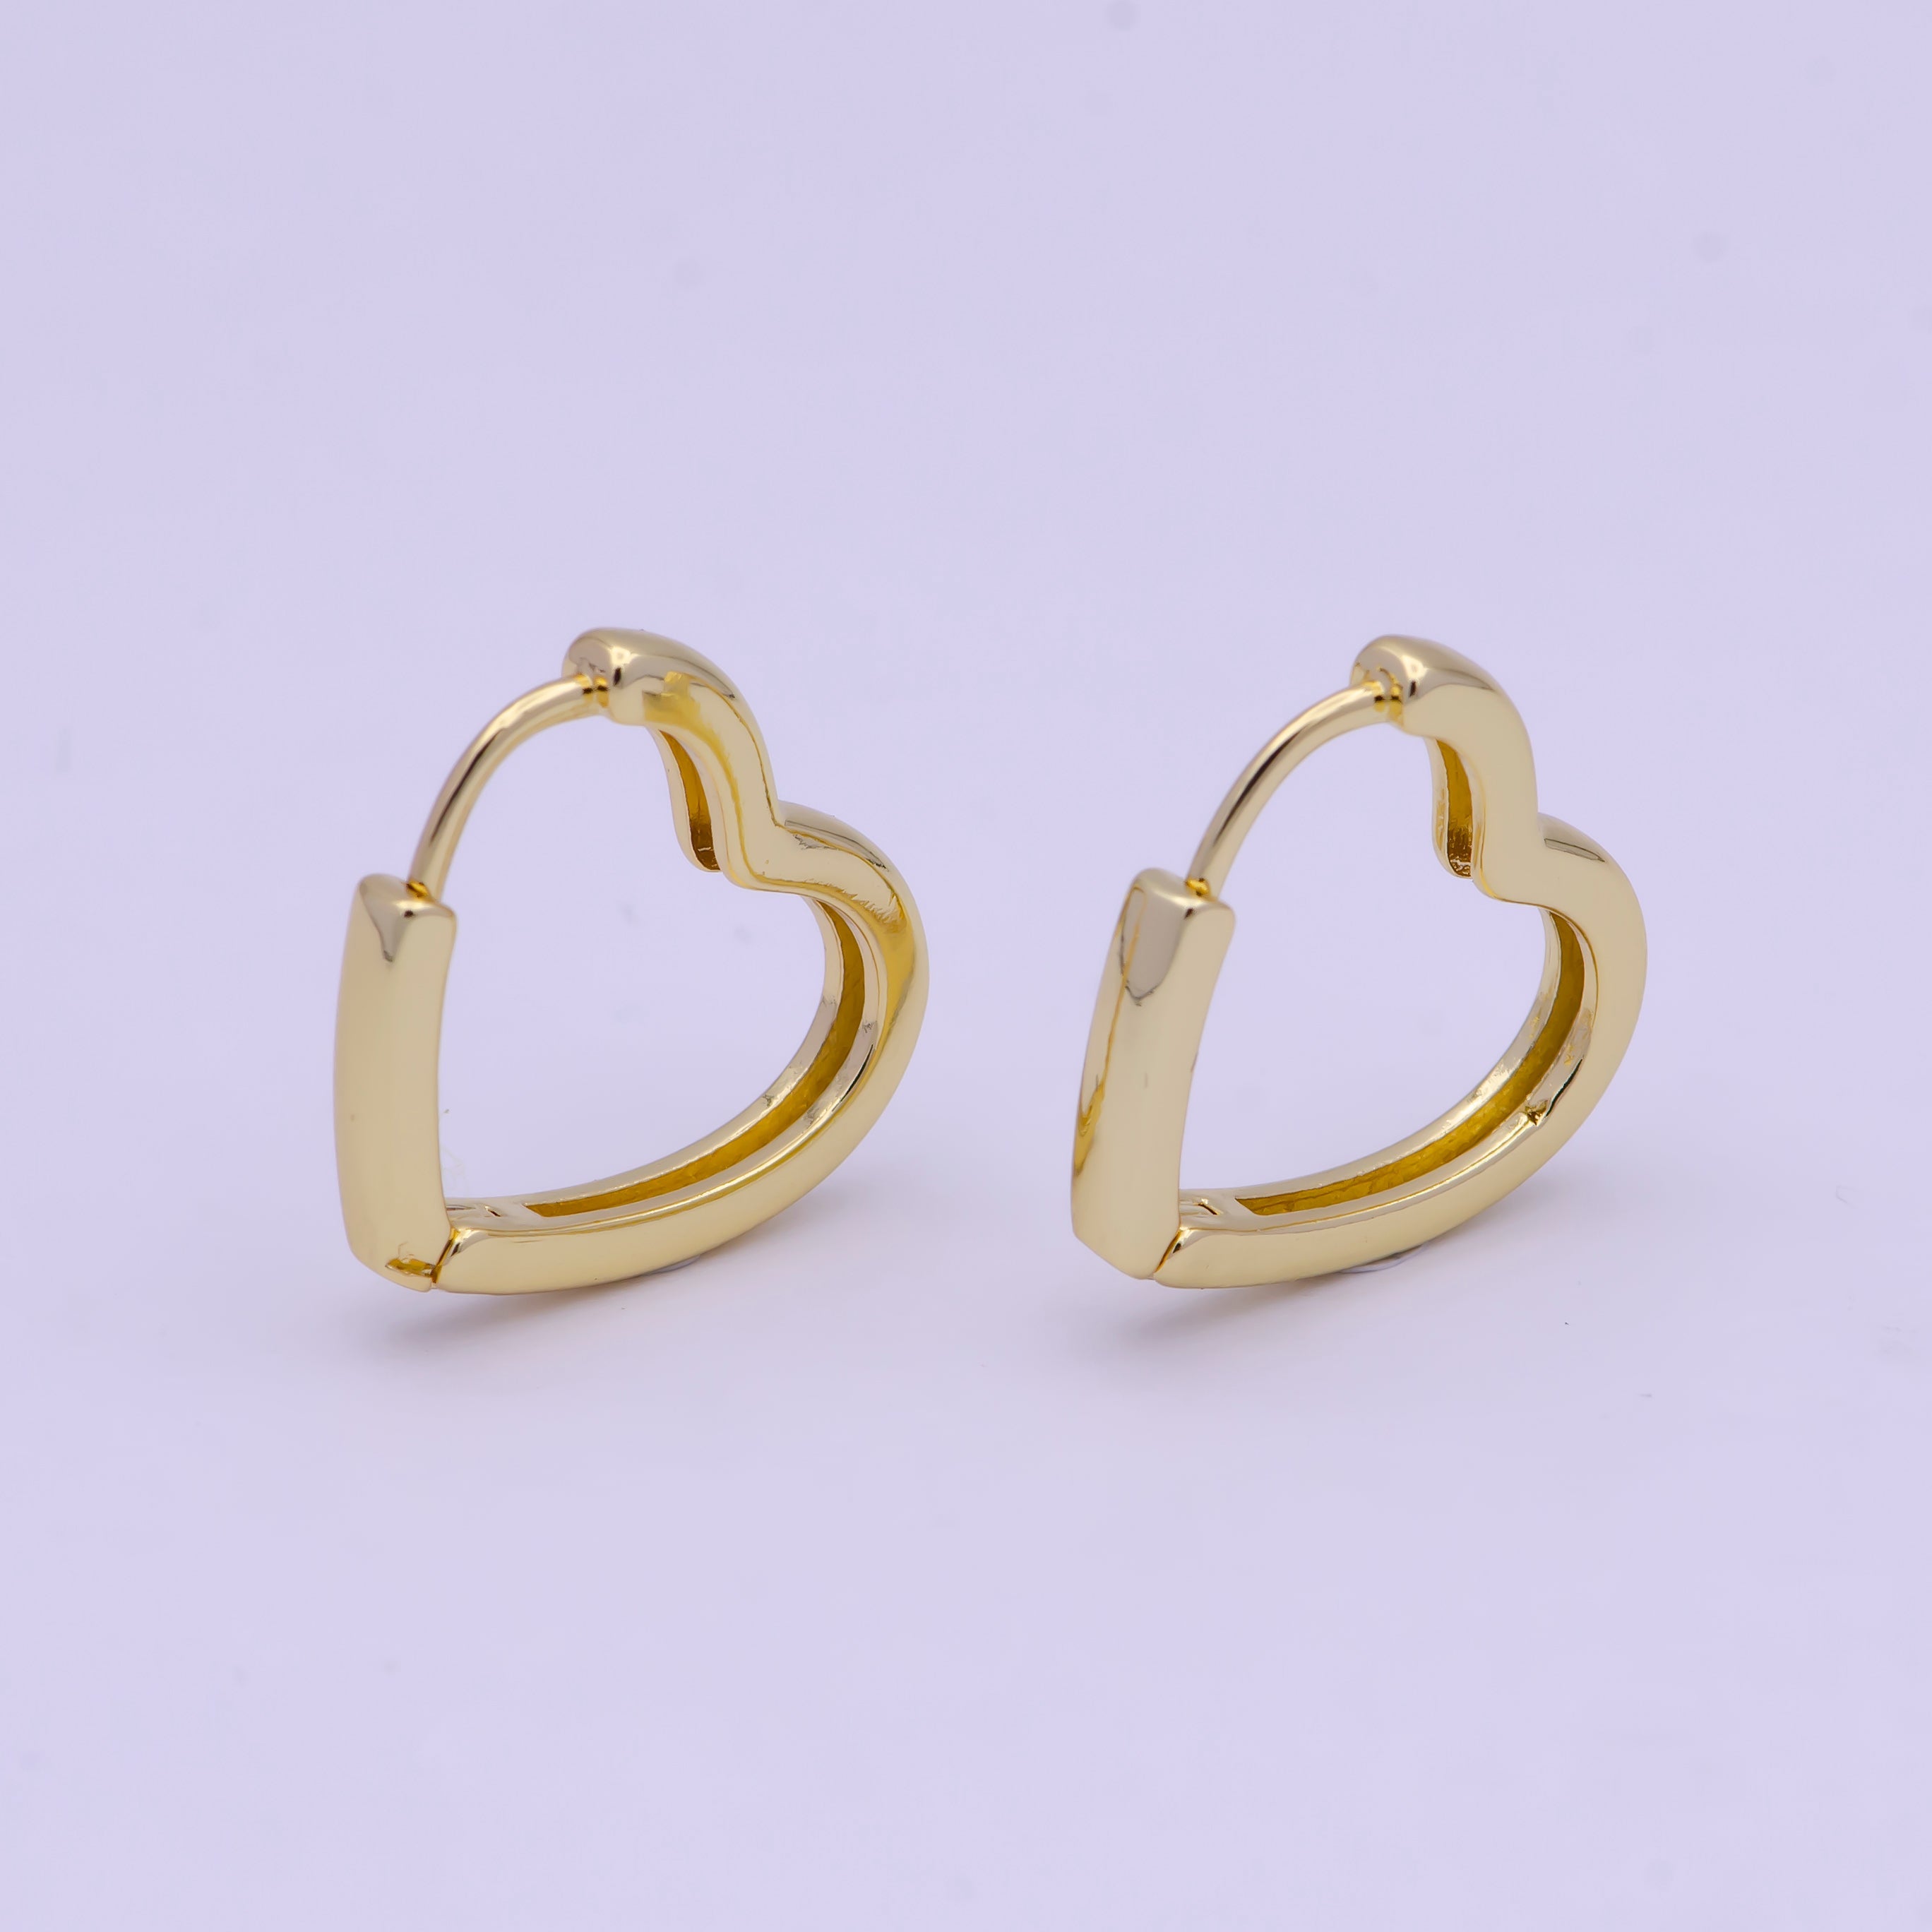 Dainty heart Hoop Earring, Dainty heart huggie Hoop Earring, Tiny heart hoops Minimalist Jewelry in 14k Gold Filled Q-012 - DLUXCA